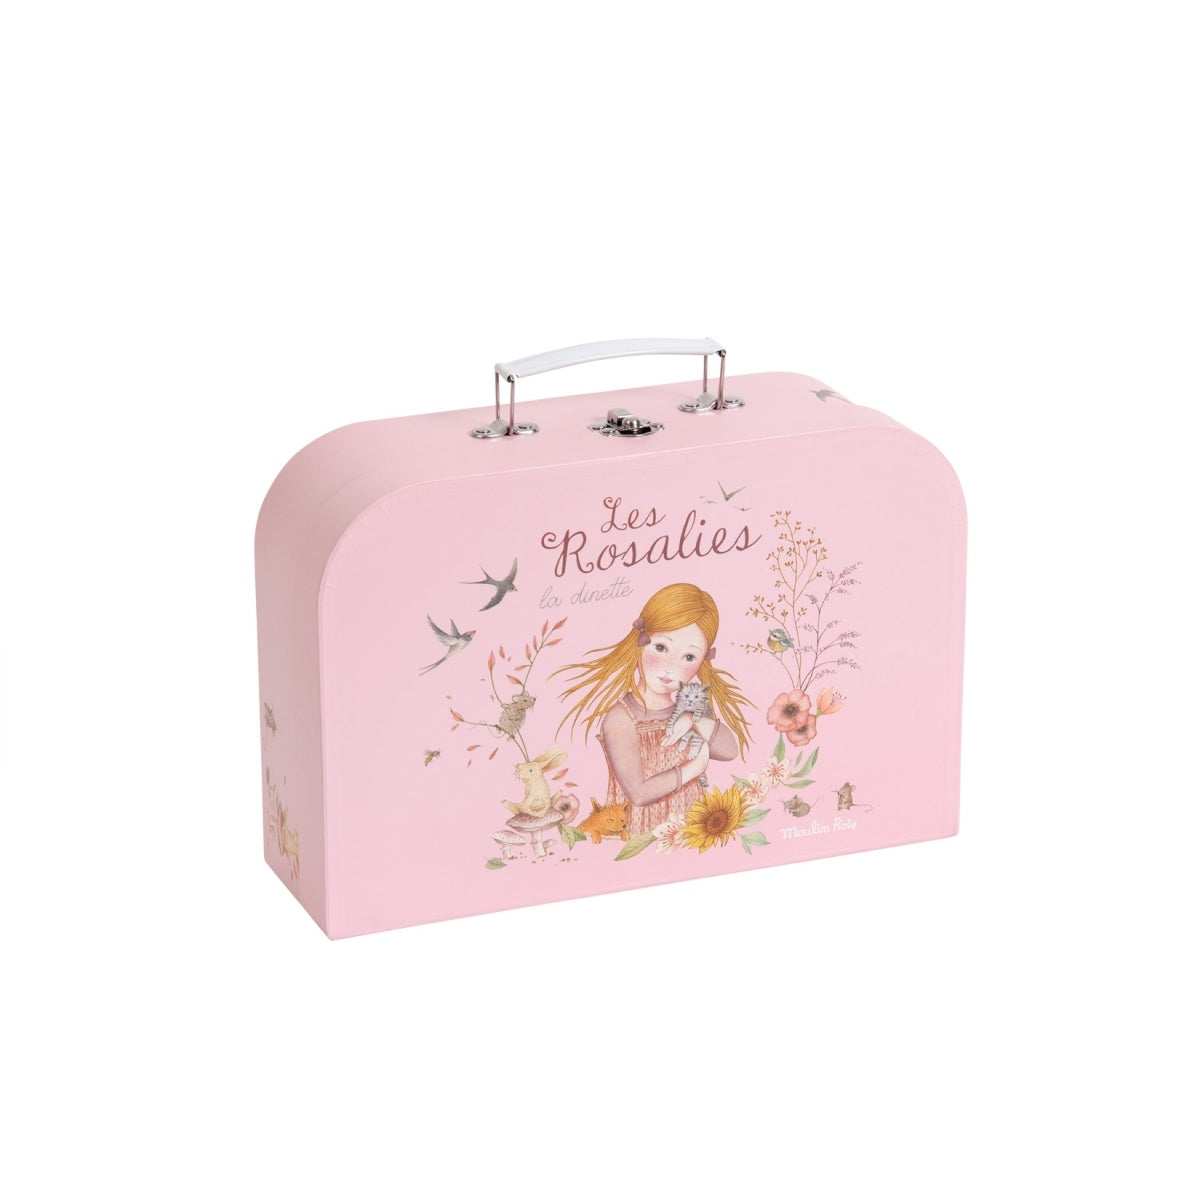 MOULIN ROTY Picknickkoffer ''les Rosalies'' in einem romantischen Design, gefüllt mit wunderschönem illustriertem Geschirr. Der Koffer lässt sich überall mit hinnehmen und ist gerade für ein Picknick unterwegs perfekt.